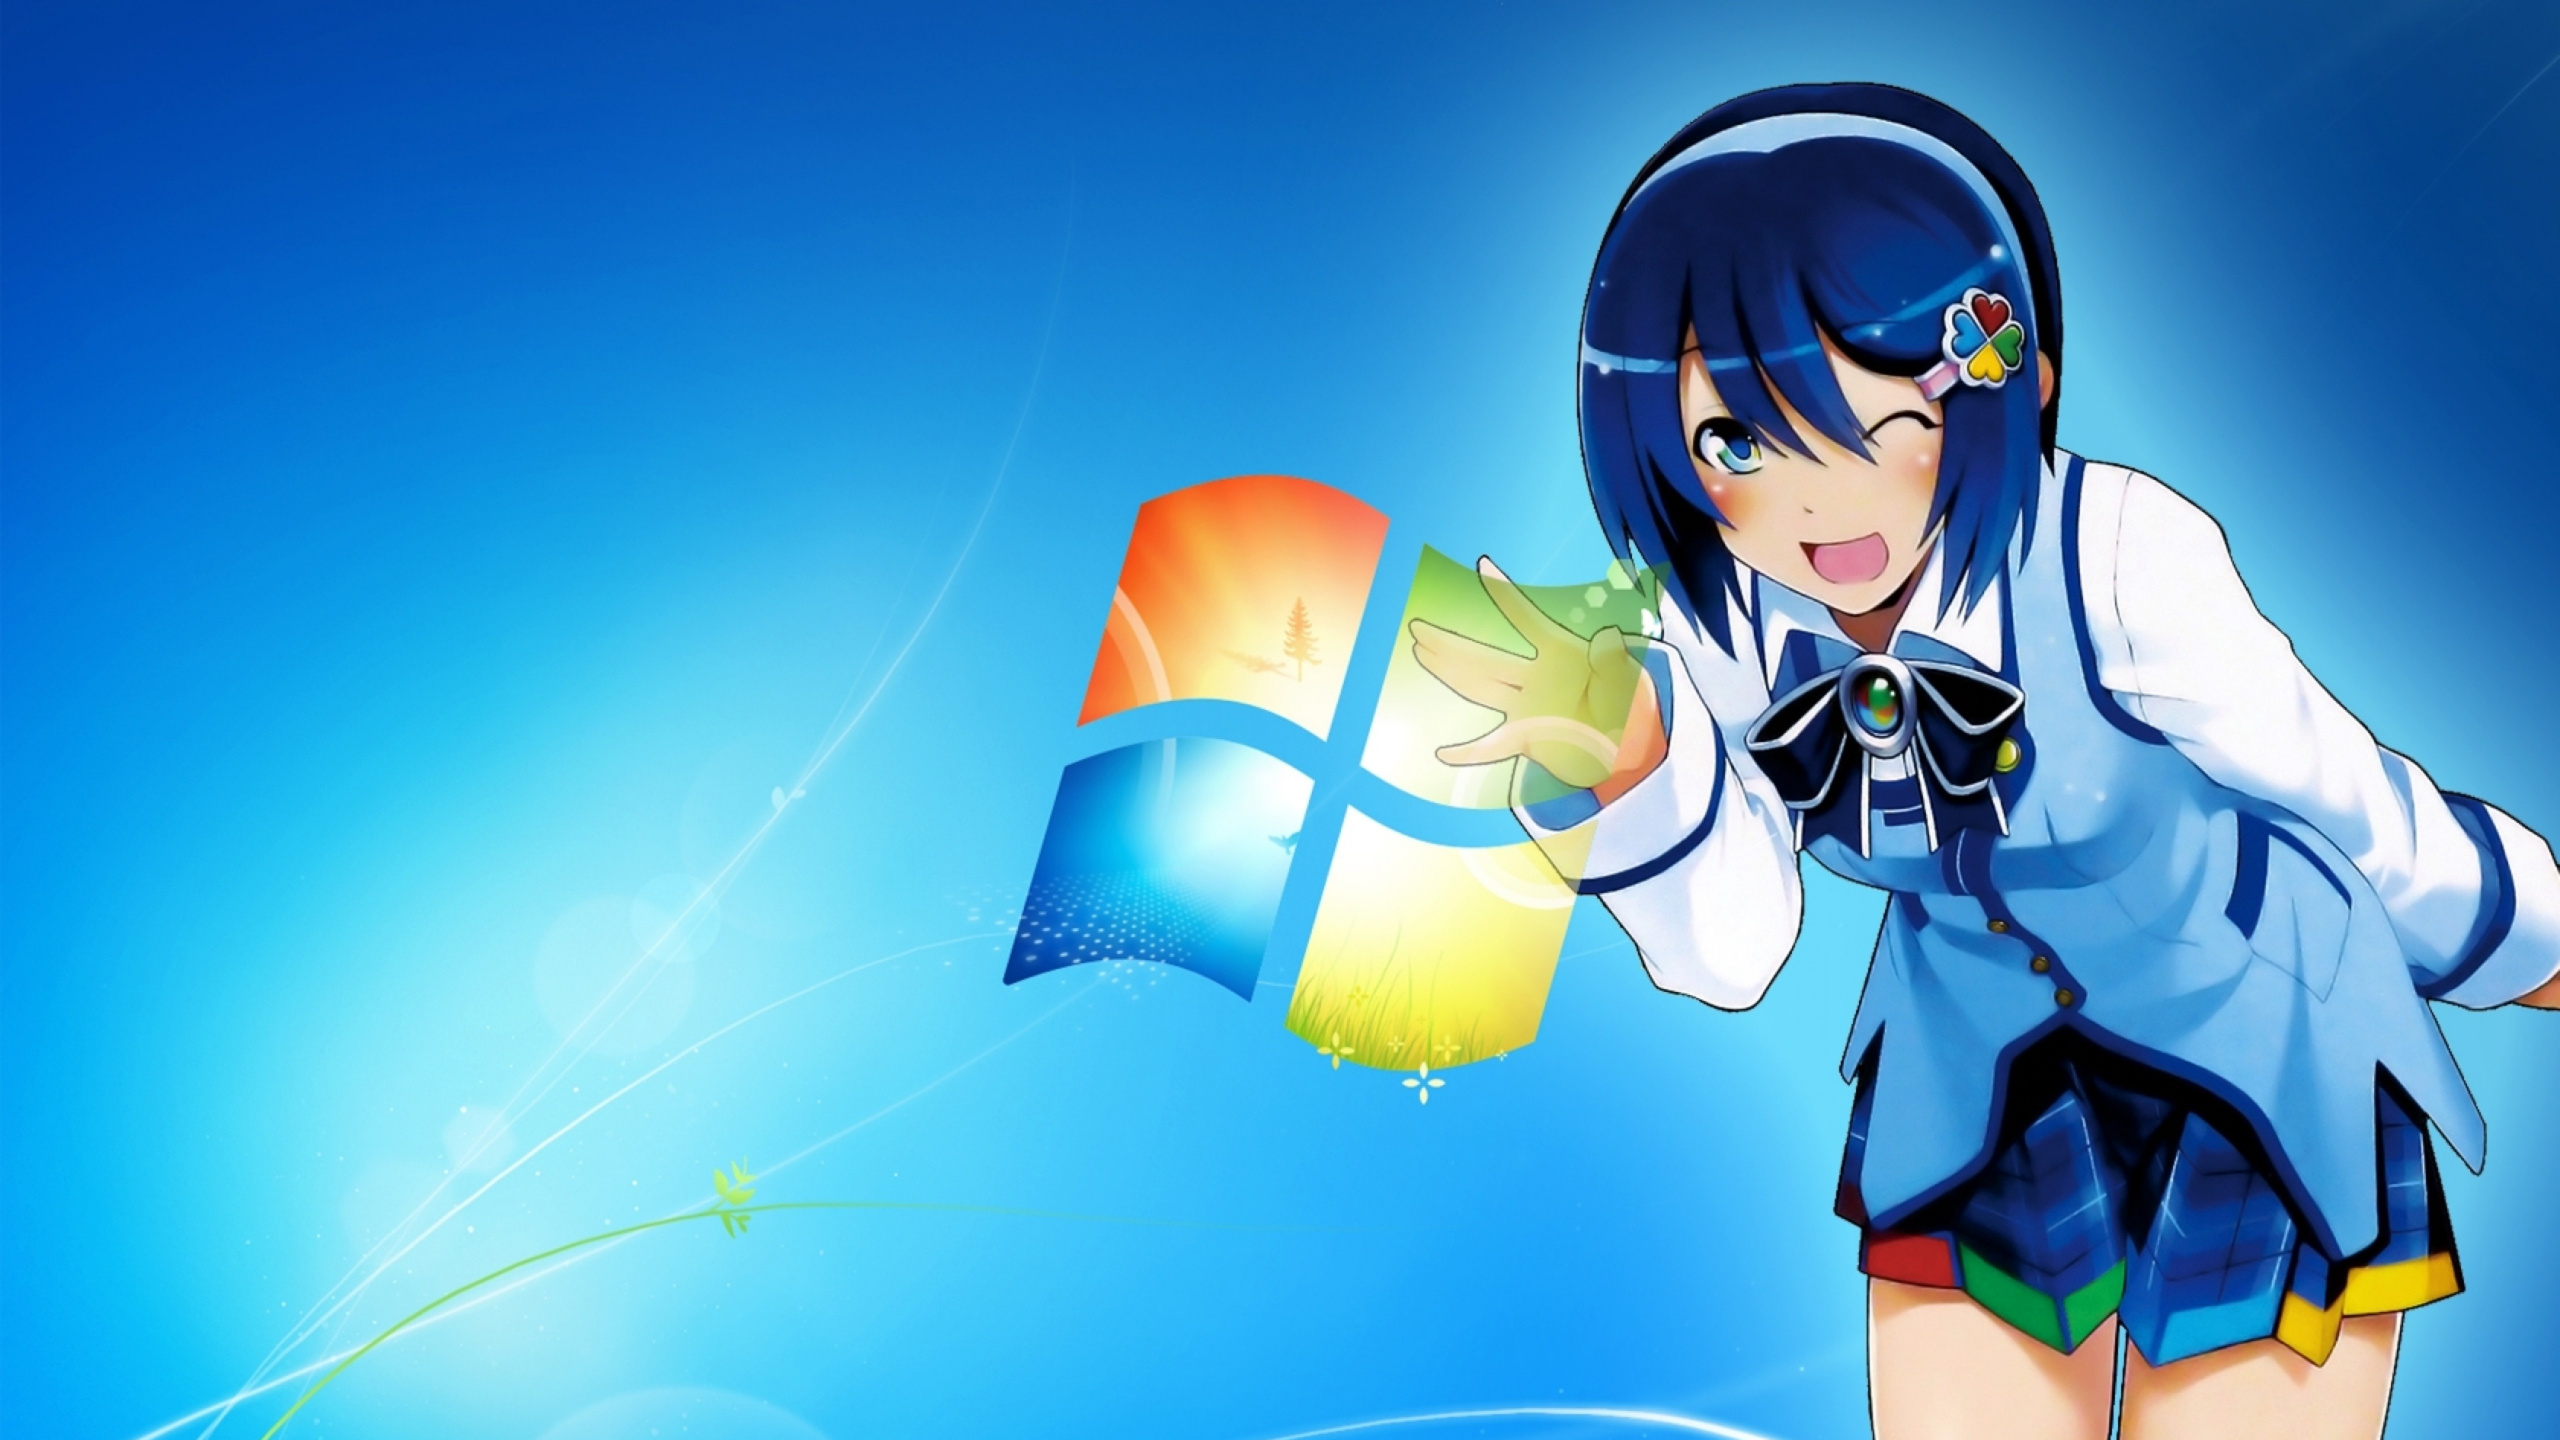 Mujer en Uniforme Escolar Azul y Blanco Personaje de Anime. Wallpaper in 2560x1440 Resolution